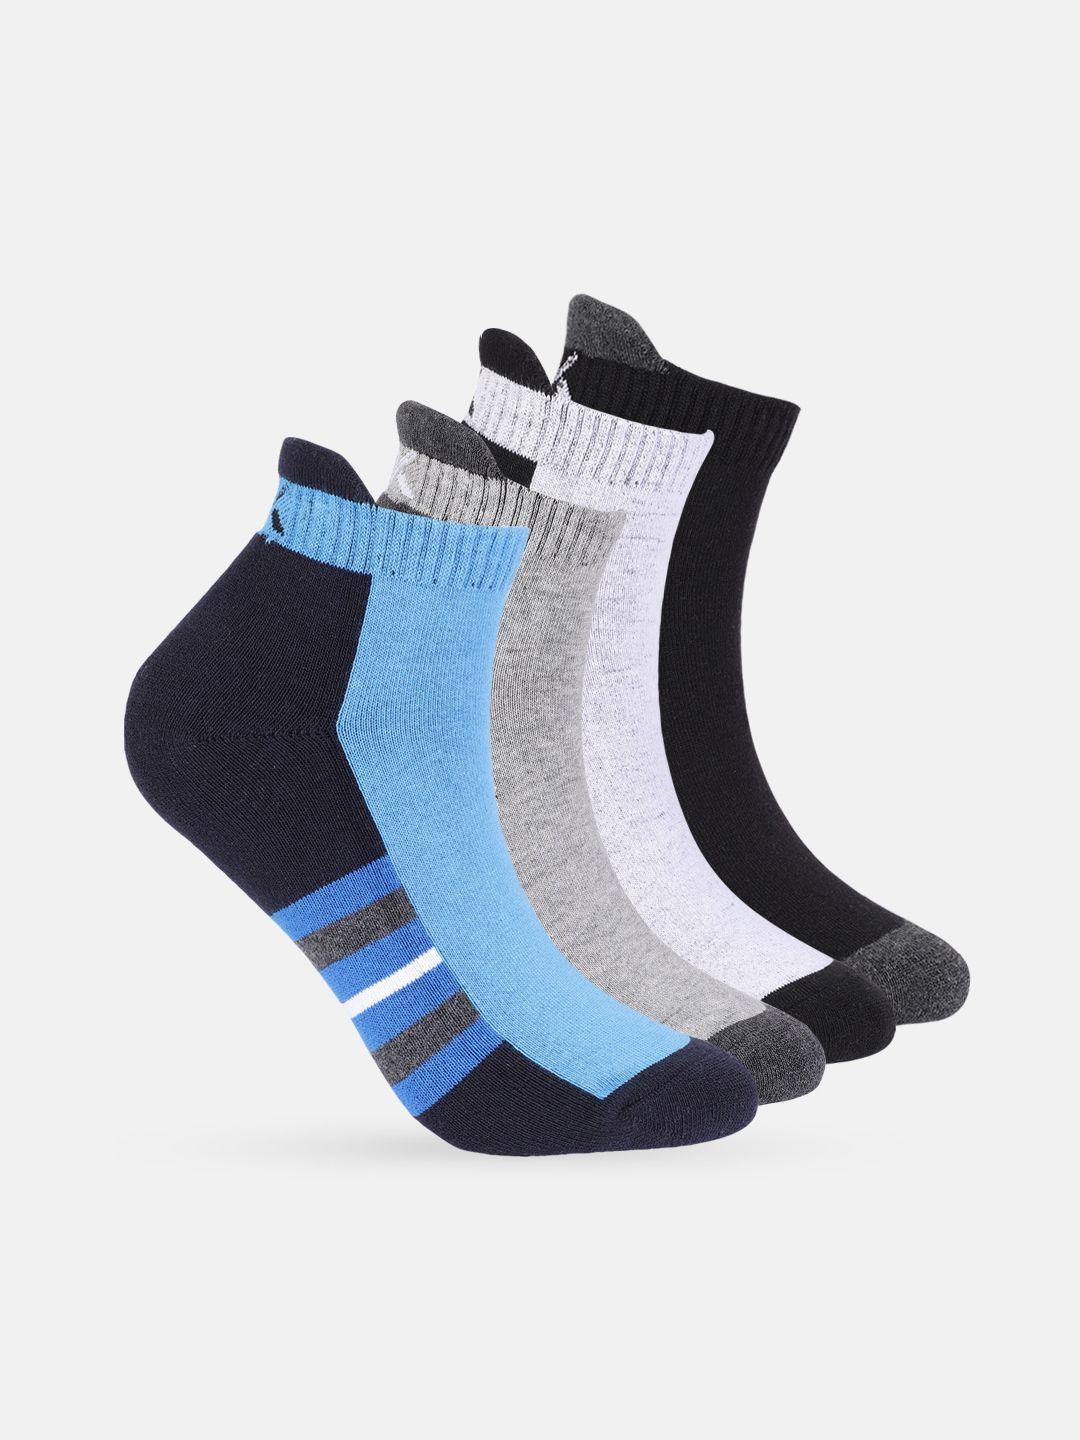 hrx by hrithik roshan men set of 4 assorted ankle length socks